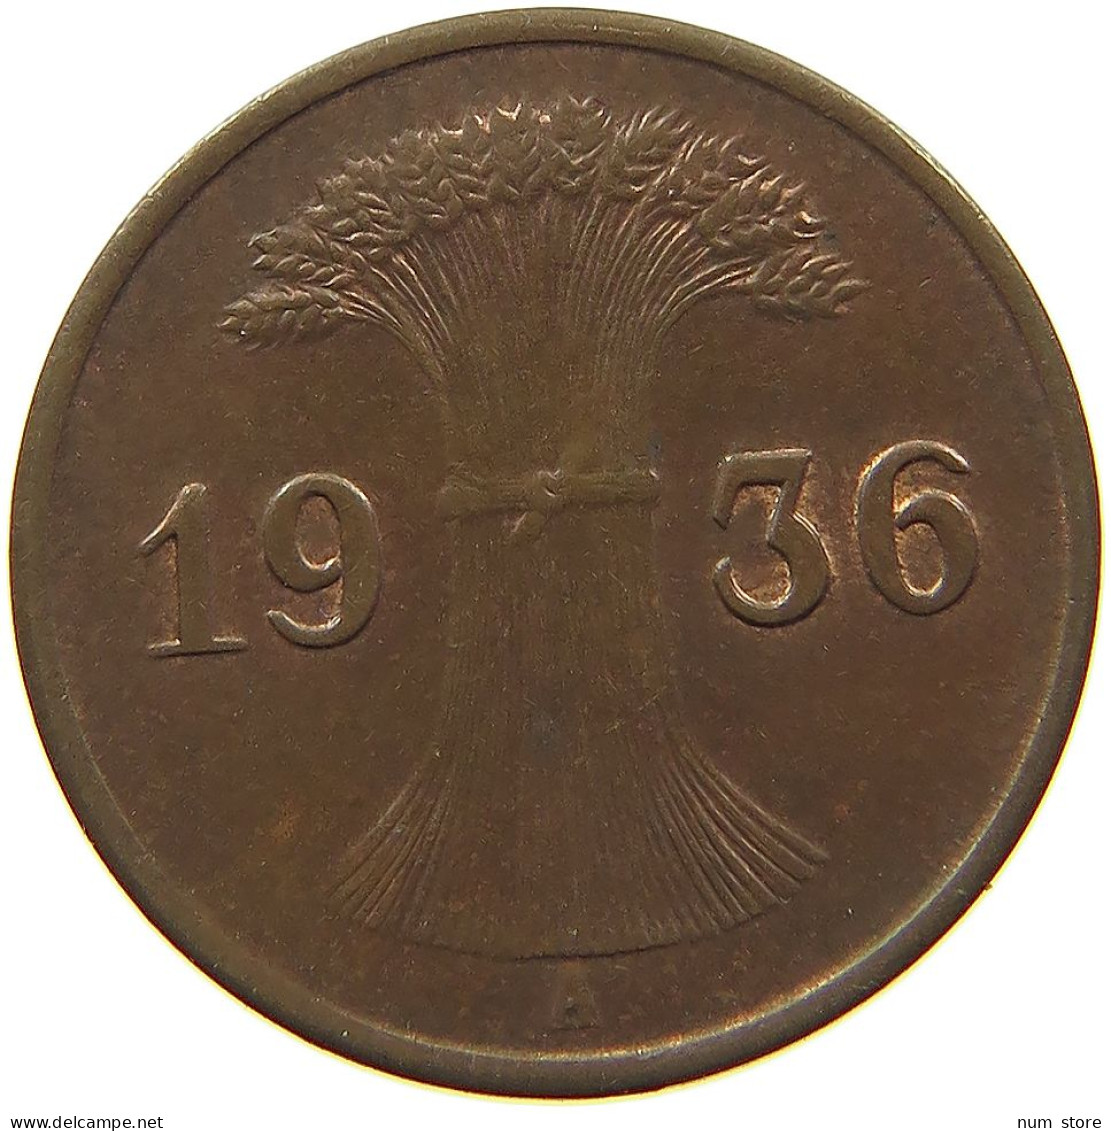 WEIMARER REPUBLIK REICHSPFENNIG 1936 A  #MA 100172 - 1 Rentenpfennig & 1 Reichspfennig